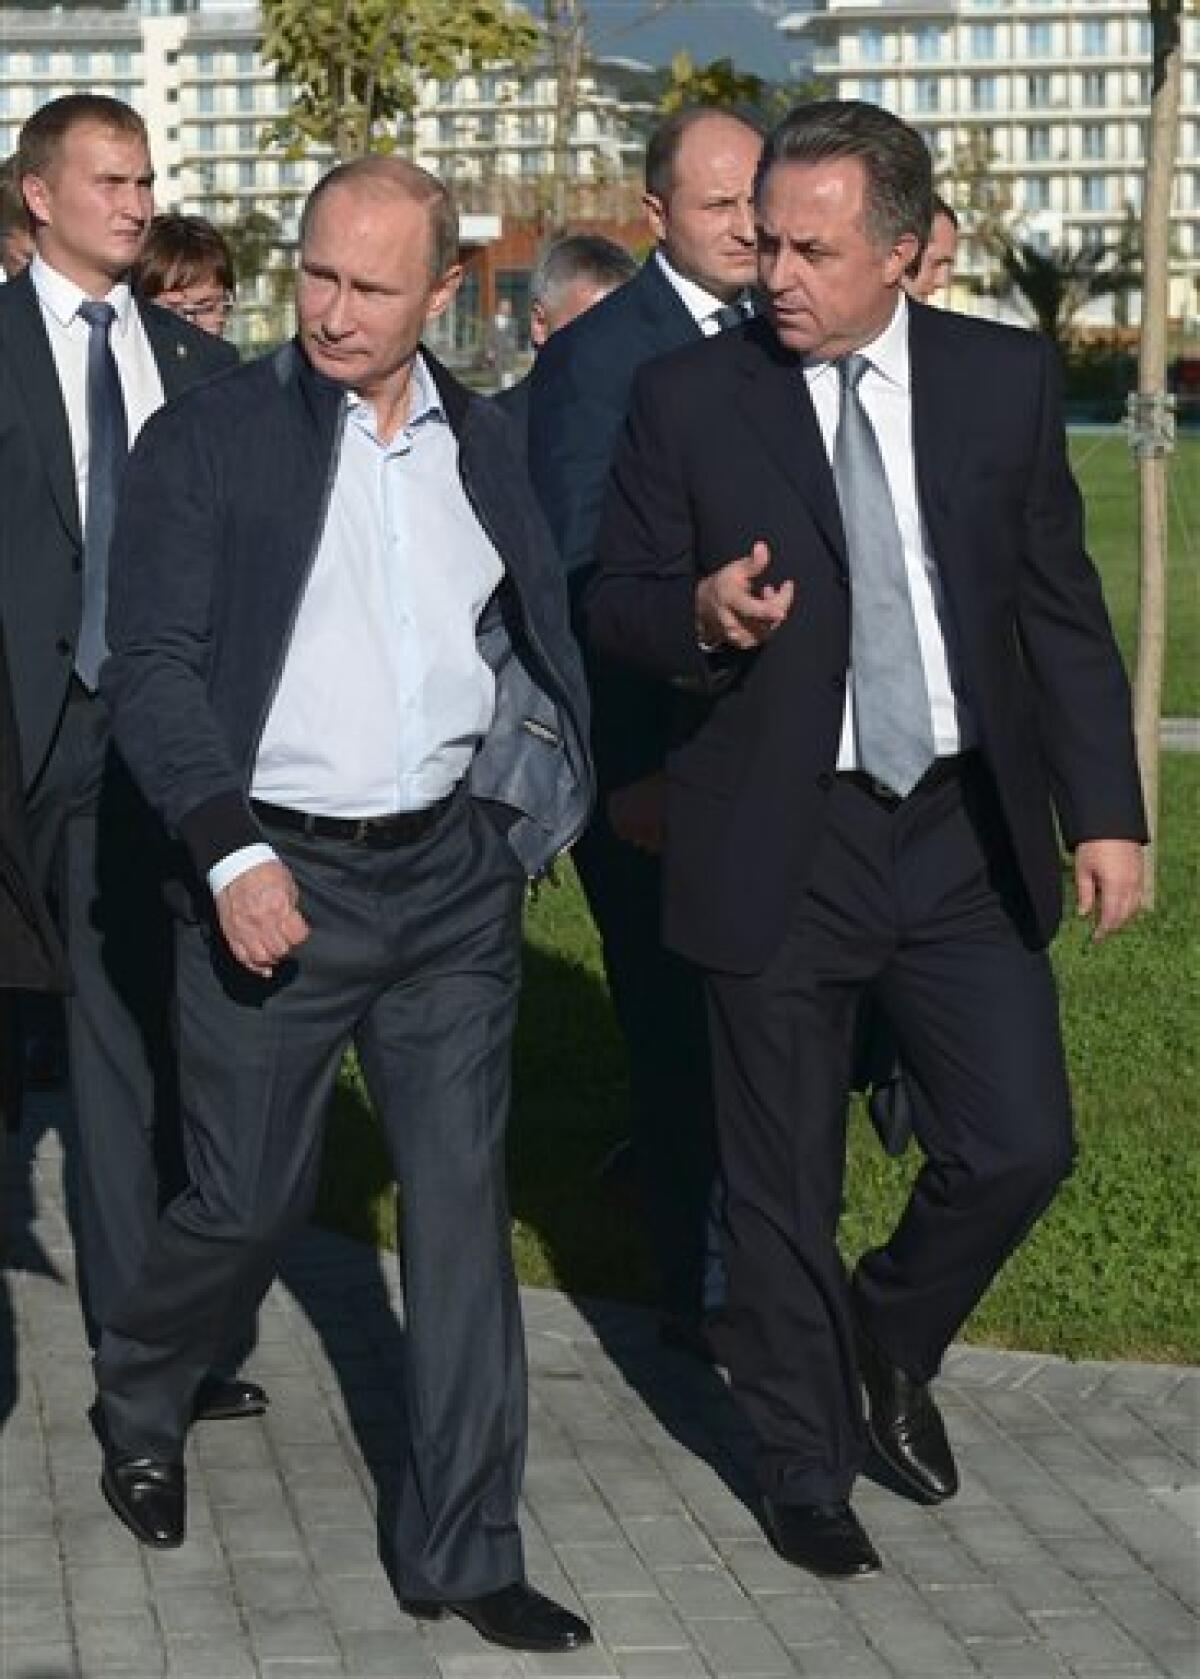 El ministro de Exteriores ruso, Serguéi Lavrov, descartó hoy una nueva Guerra Fría y que Moscú busque debilitar a la Unión Europea (UE) en una reunión con empresarios europeos.